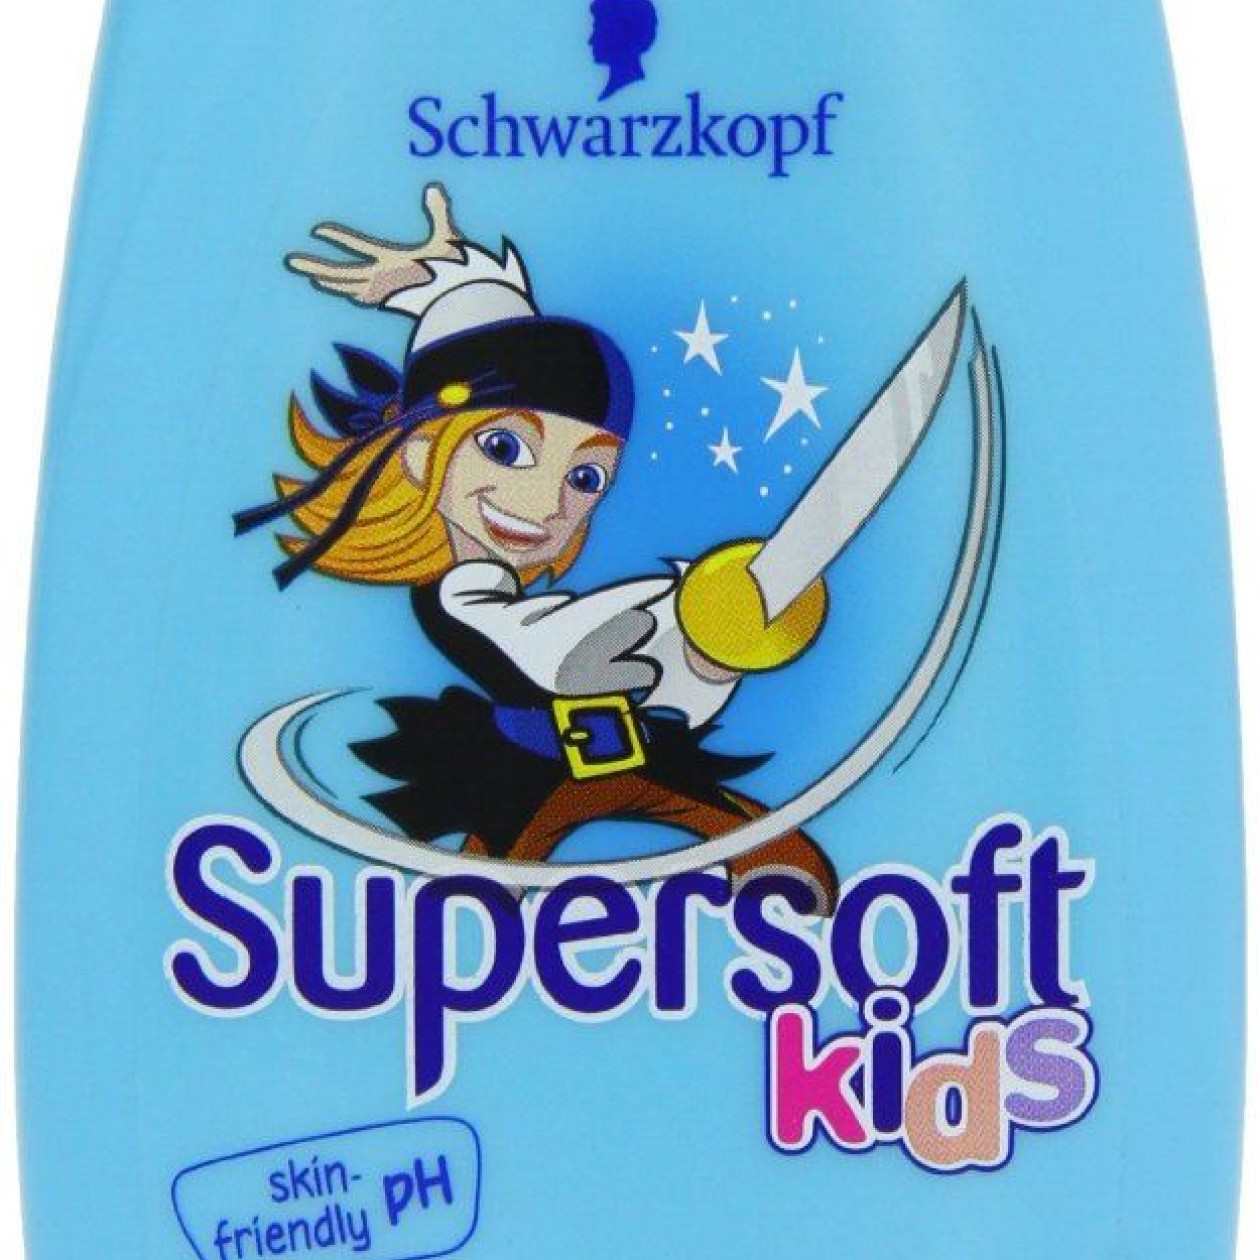 Schwarzkopf Supersoft Kids Boys Shampoo